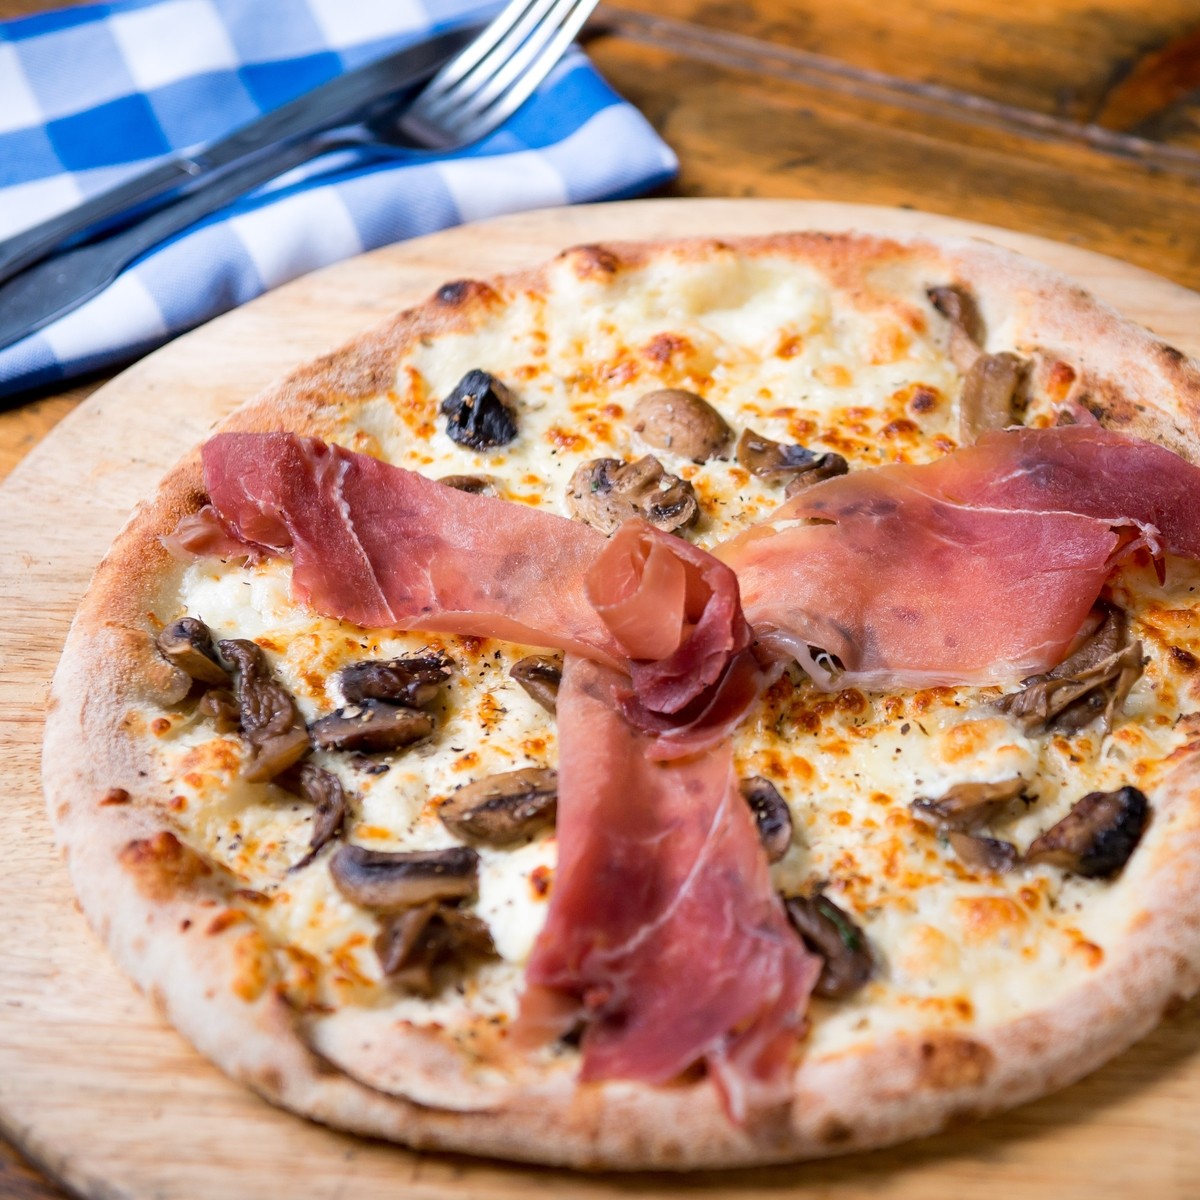 Pizza Roxanne: Wild Mushrooms, Goat Cheese, Creme Fraiche, Mozzarella and finished with Prosciutto